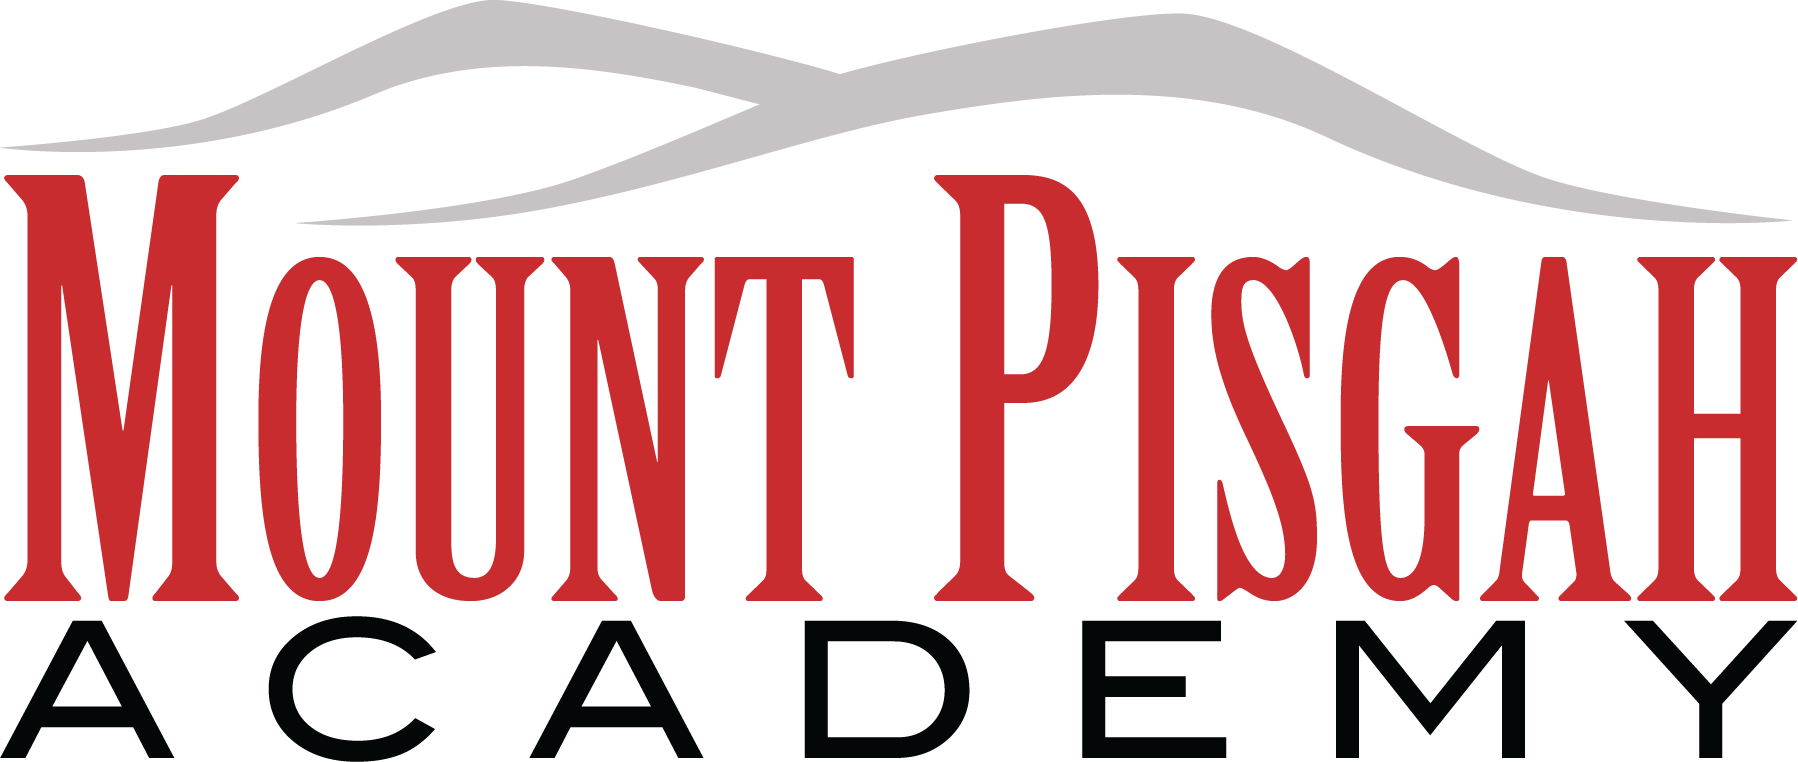 Mount Pisgah Academy logo